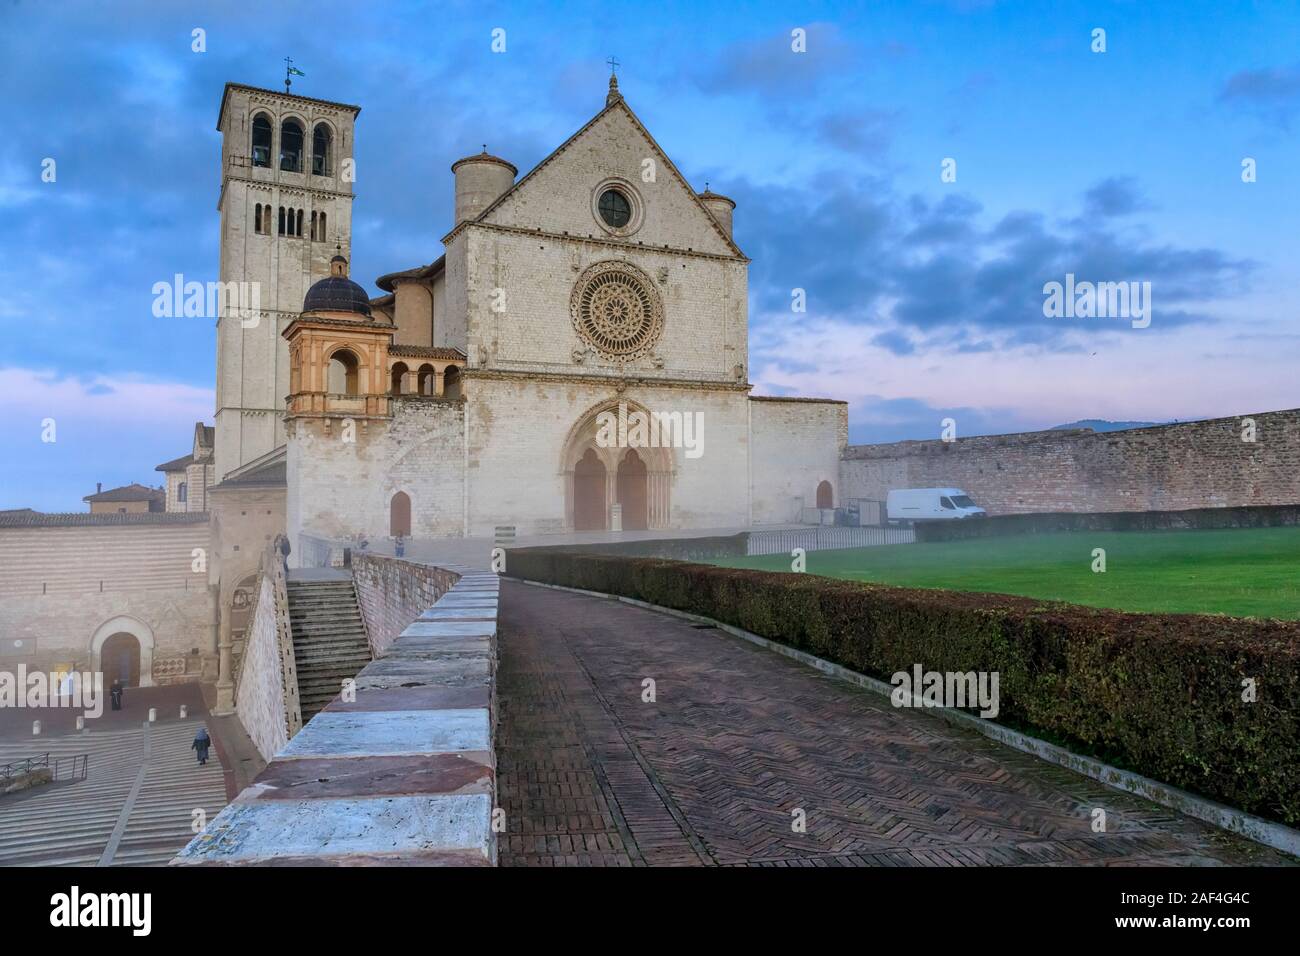 La maestosa Basilica di San Francesco in Assisi, Italia. Fotografato all'alba, tra la nebbia di mattina e il cielo nuvoloso su un giorno d'inverno. Foto Stock